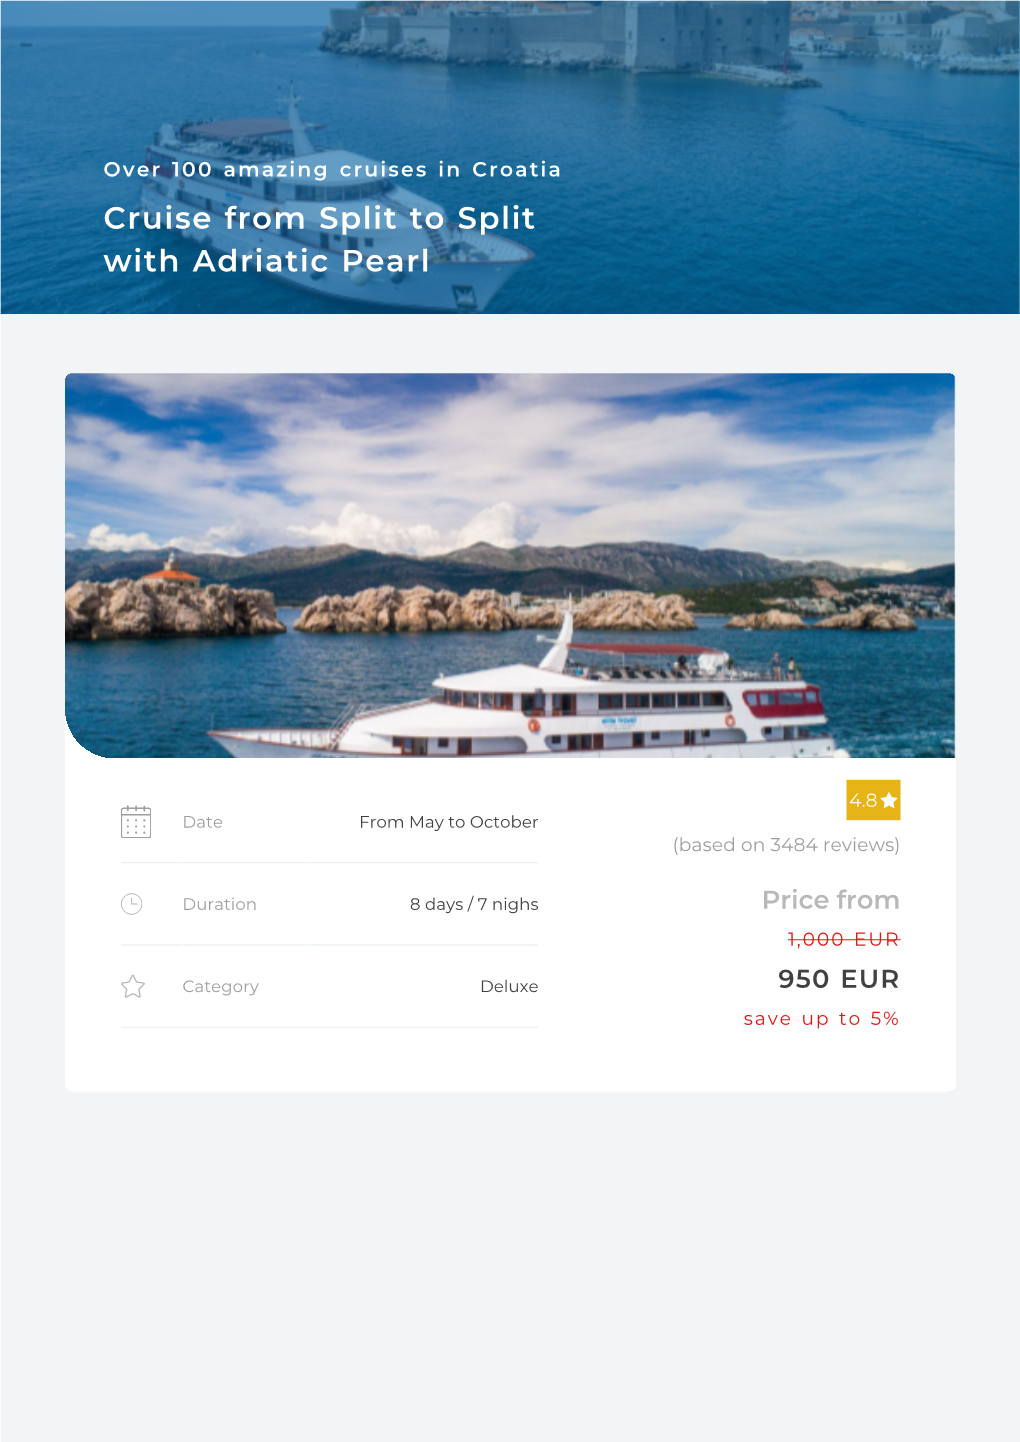 Adriatic Pearl: Split to Split 2021